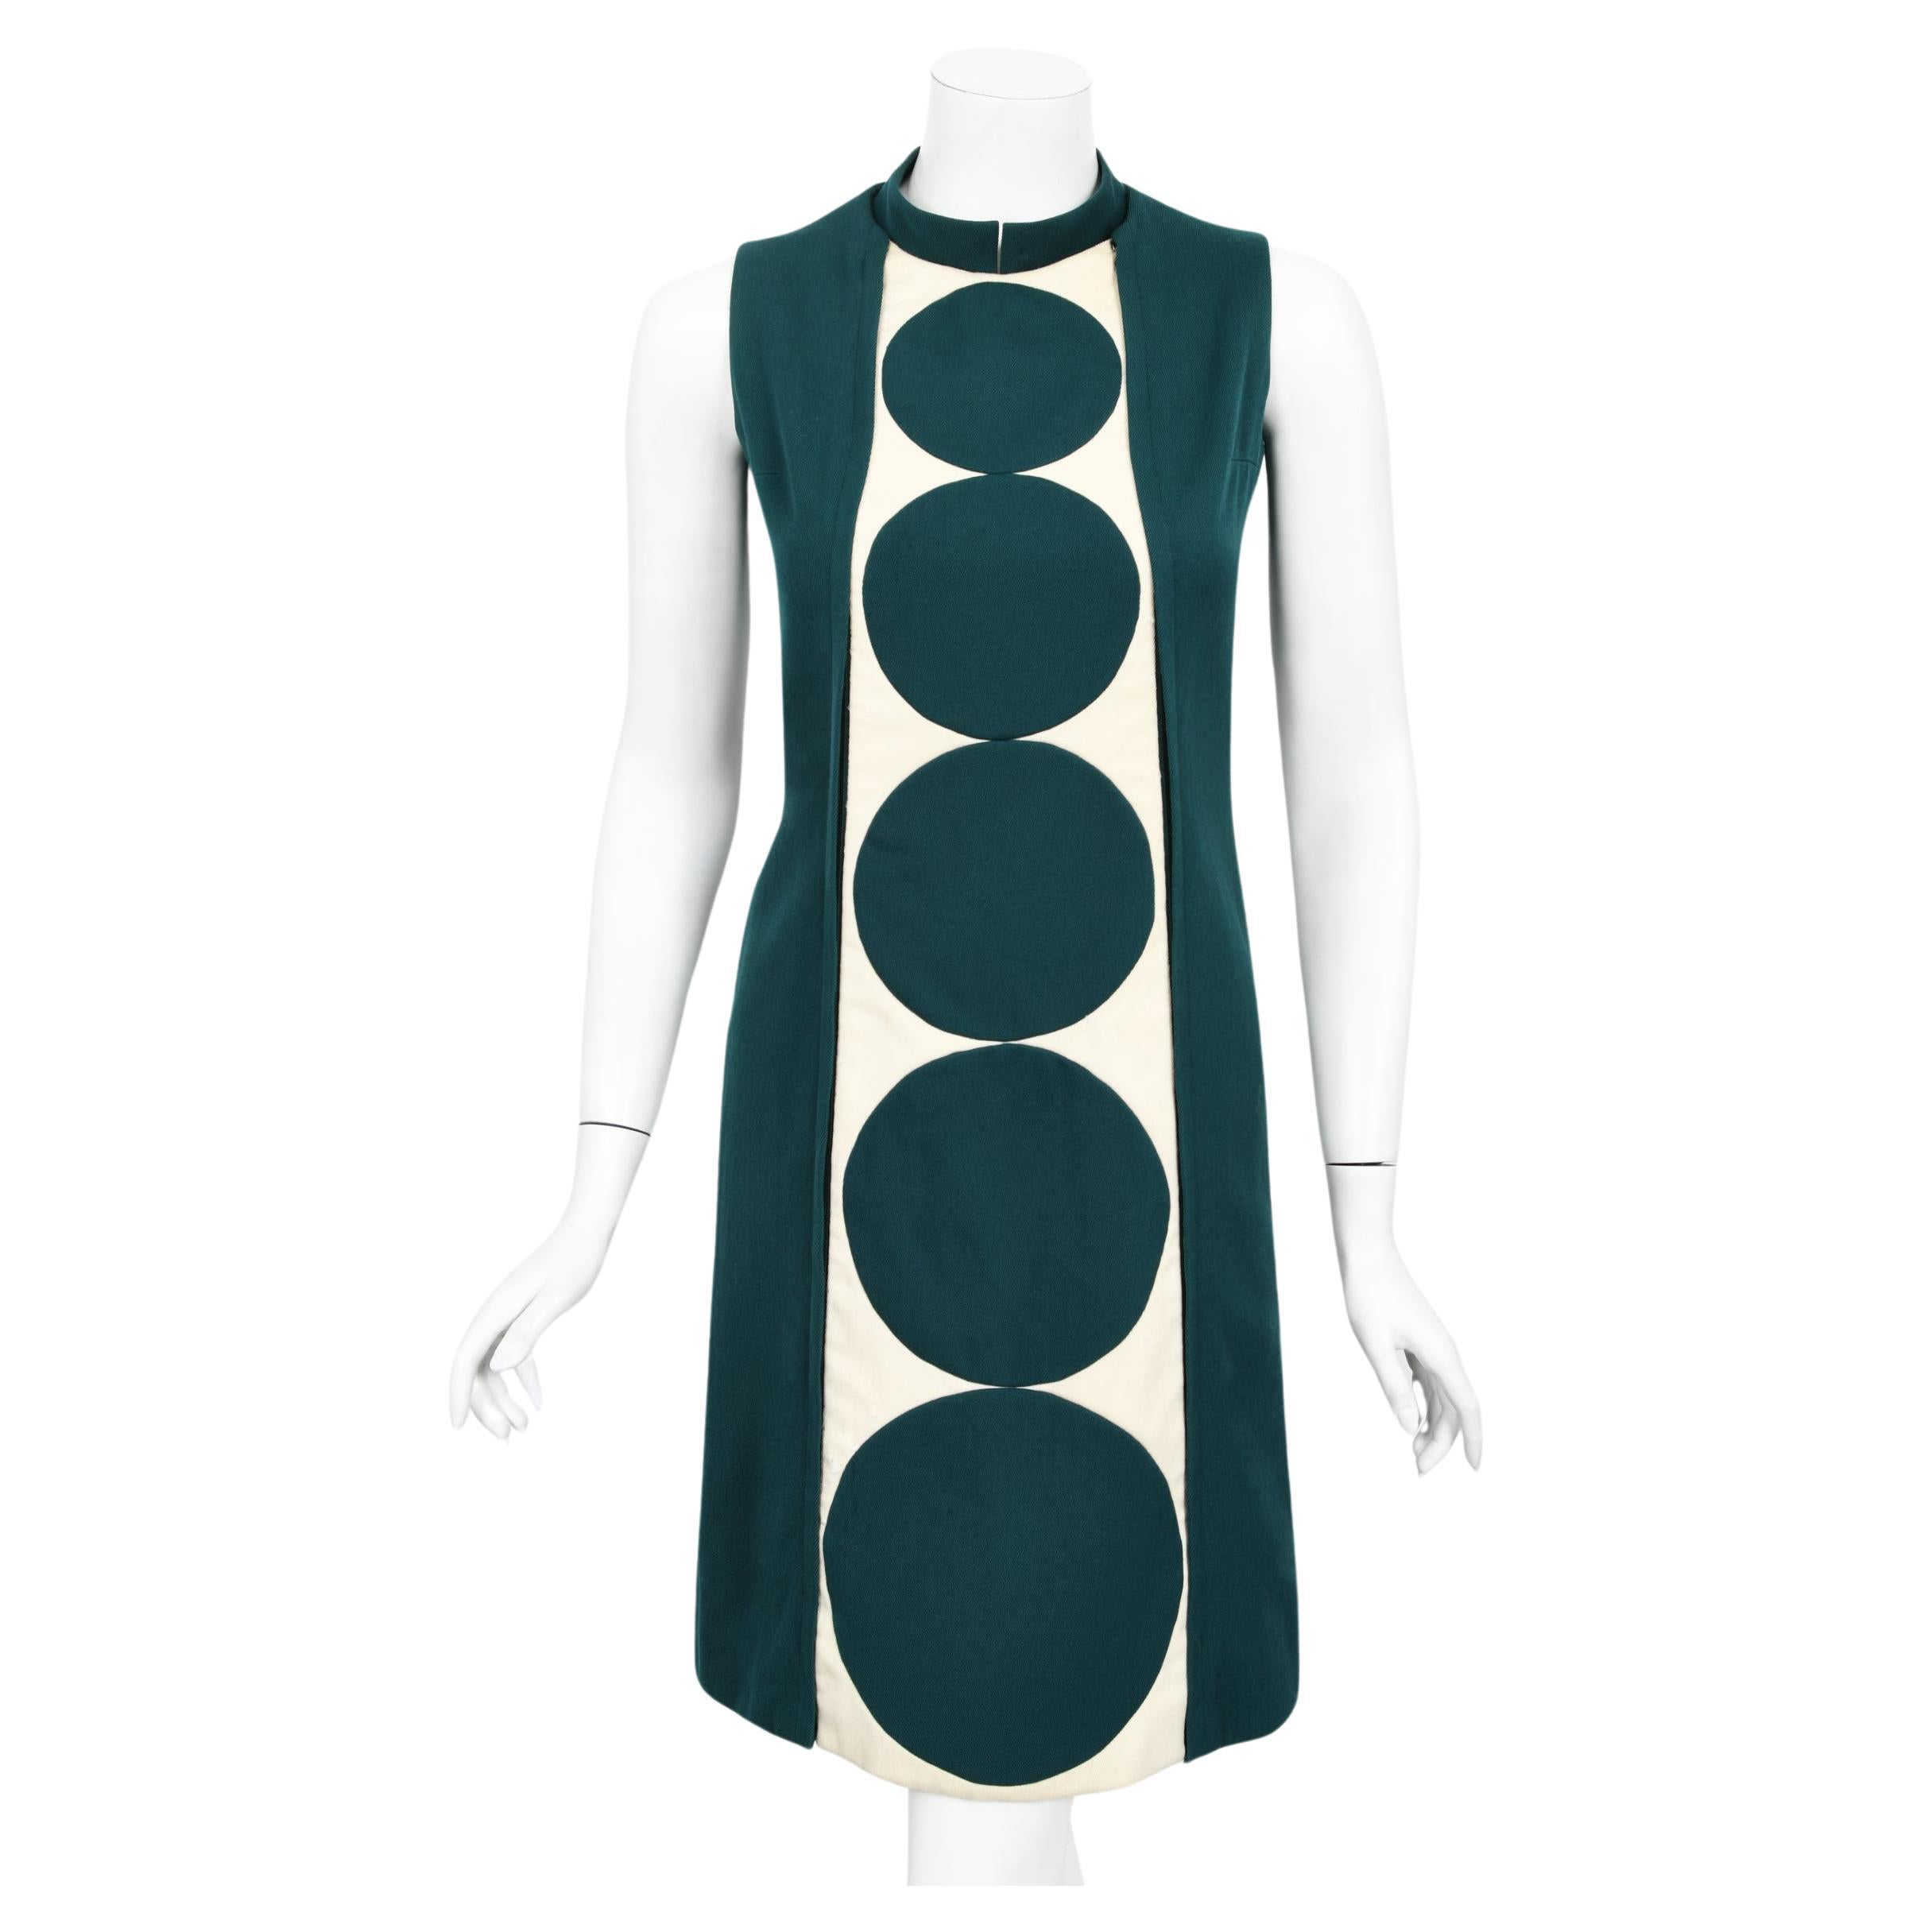 Vintage 1966 Jacques Esterel Haute Couture Documented Teal Blue Op-Art Mod Dress For Sale